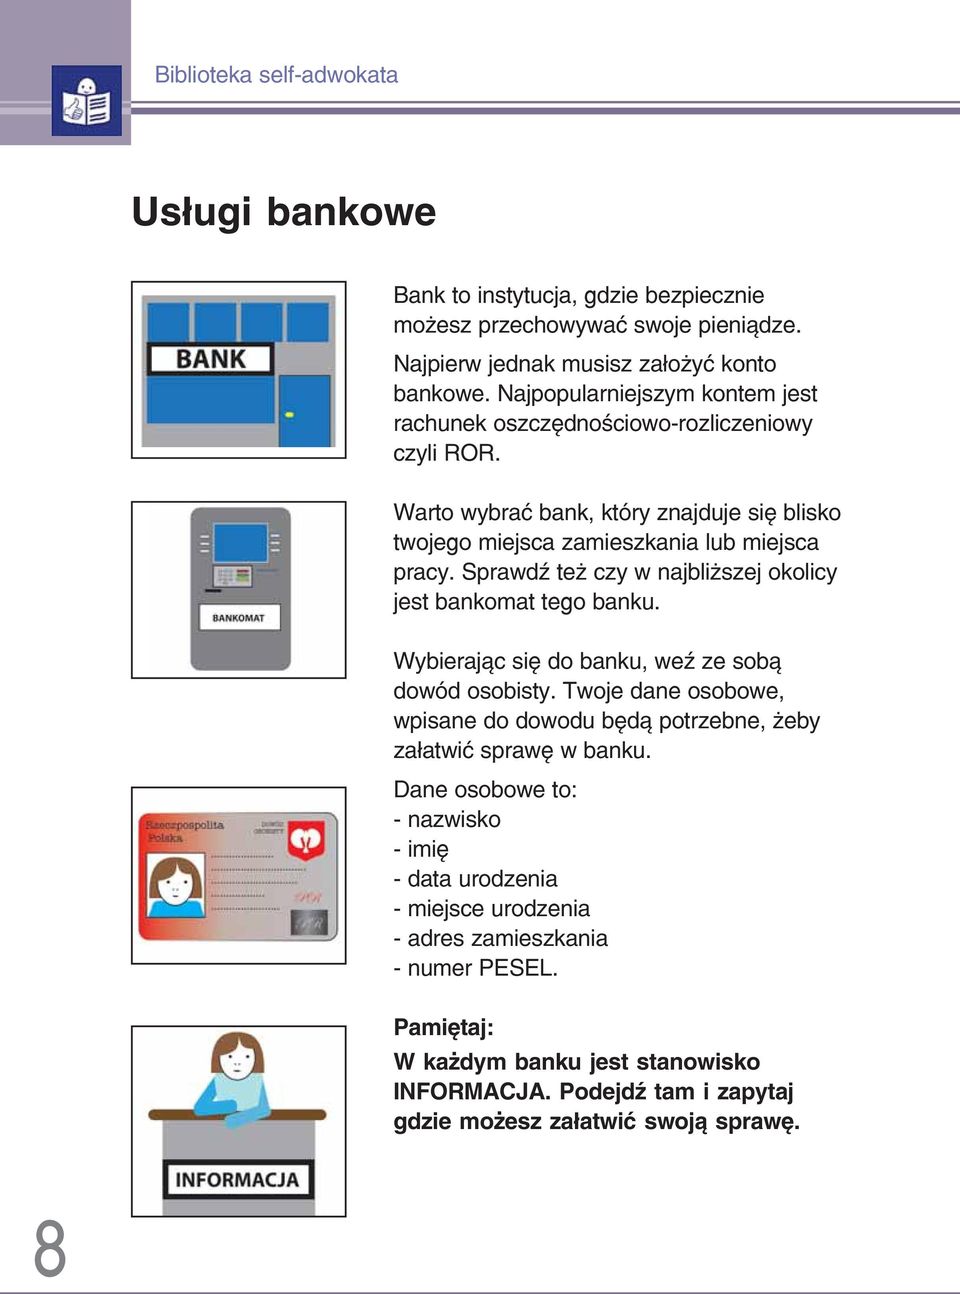 Sprawdź też czy w najbliższej okolicy jest bankomat tego banku. Wybierając się do banku, weź ze sobą dowód osobisty.